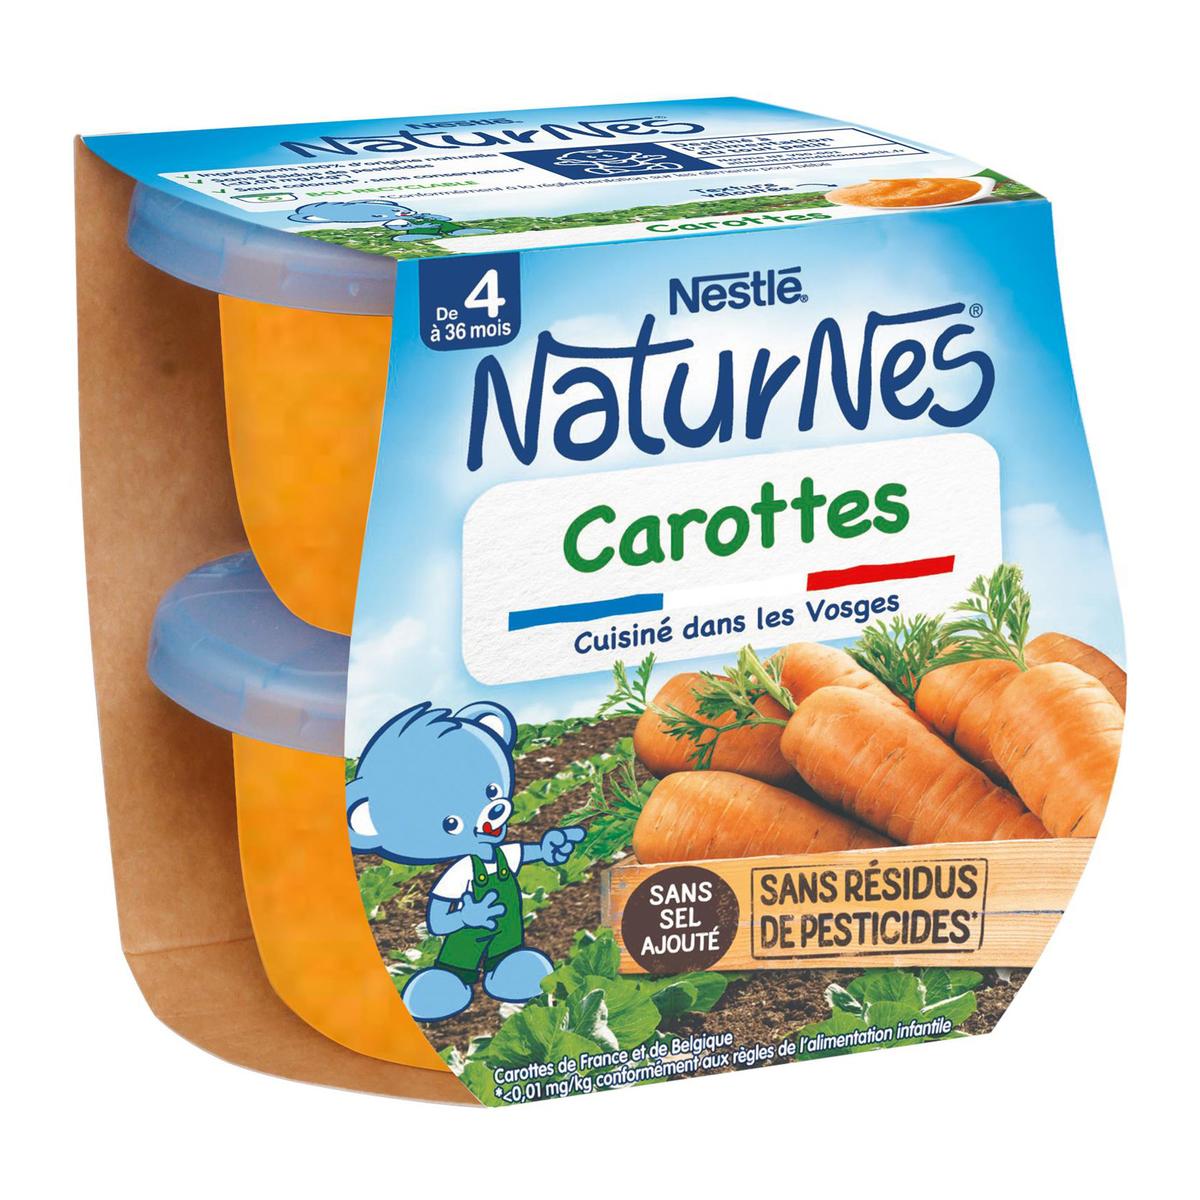 Achat / Vente Nestlé - Naturnes Carottes Bol Bébé Dès 4 mois, 2x130g